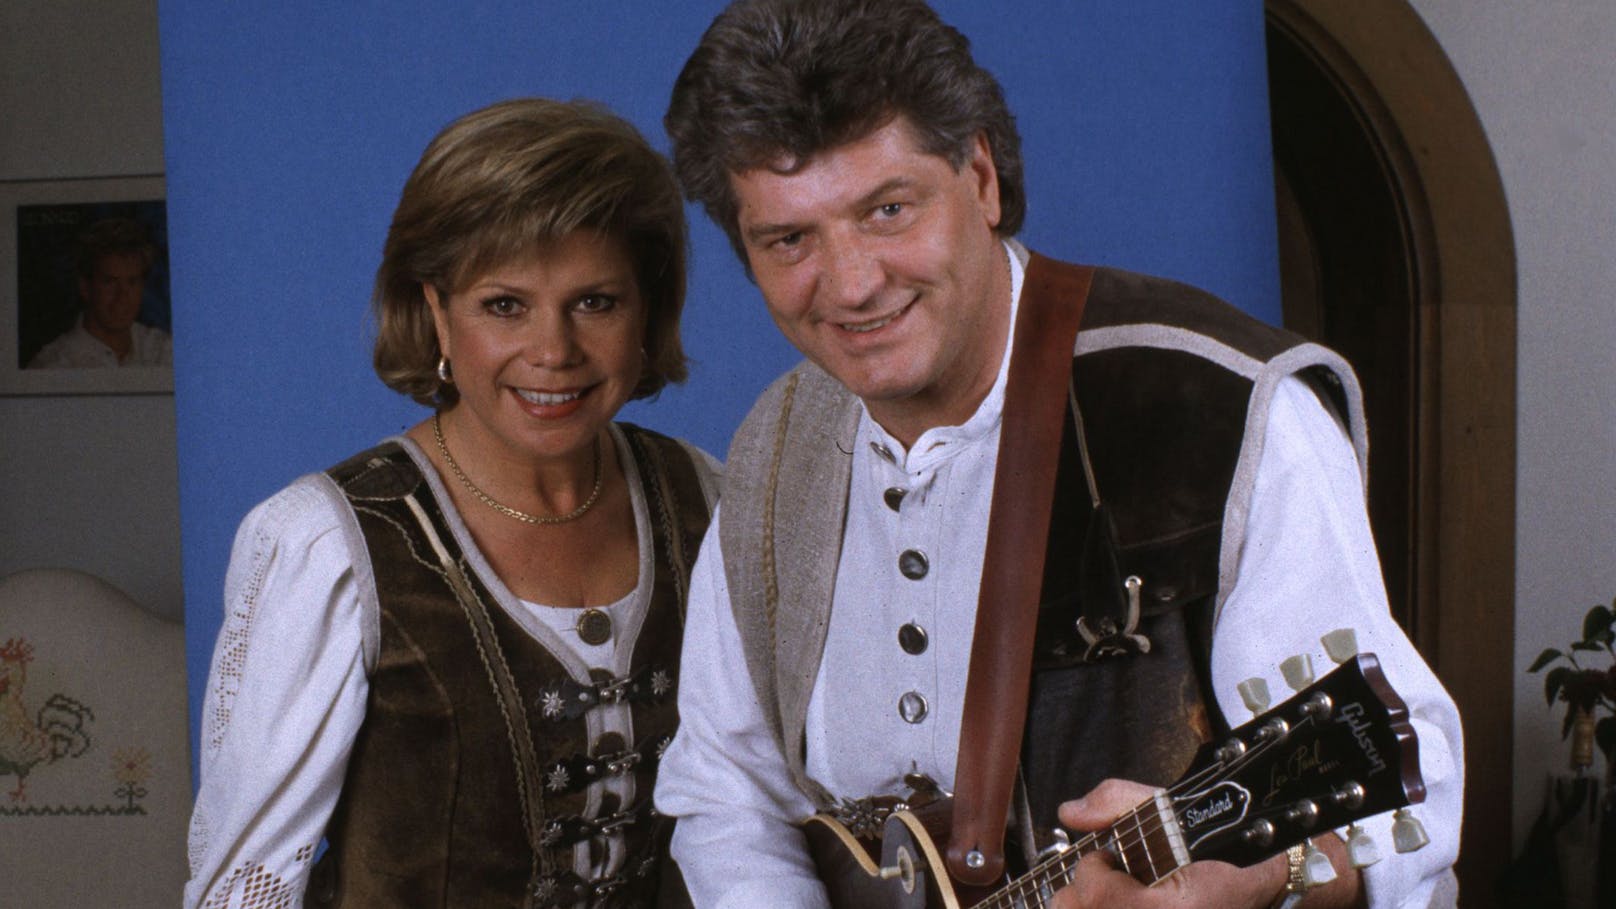 Sie sind die Blaupause für alle Schlager-Ehen: 1973 lernten sich "<strong>Marianne und Michael</strong>" in München kennen und erhielten ein Engagement als Gesangs- und Musikerduo. Mittlerweile sind die beiden 43 Jahre verheiratet und haben zwei Söhne.